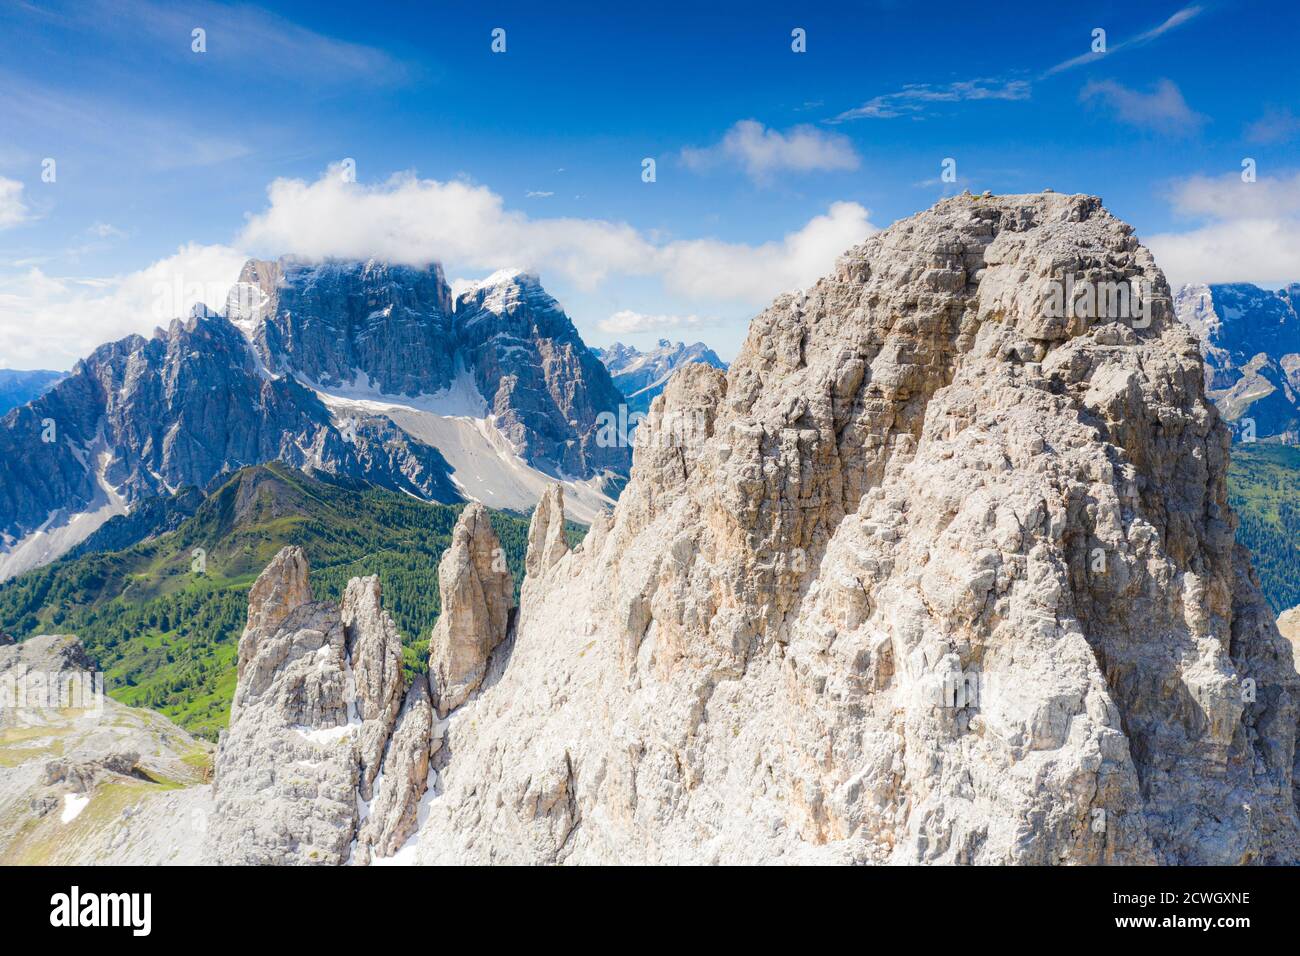 Soleil sur les sommets rocheux de Becco di Mezzodi et Monte Pelmo, vue aérienne, Dolomites d'Ampezzo, province de Belluno, Vénétie, Italie Banque D'Images